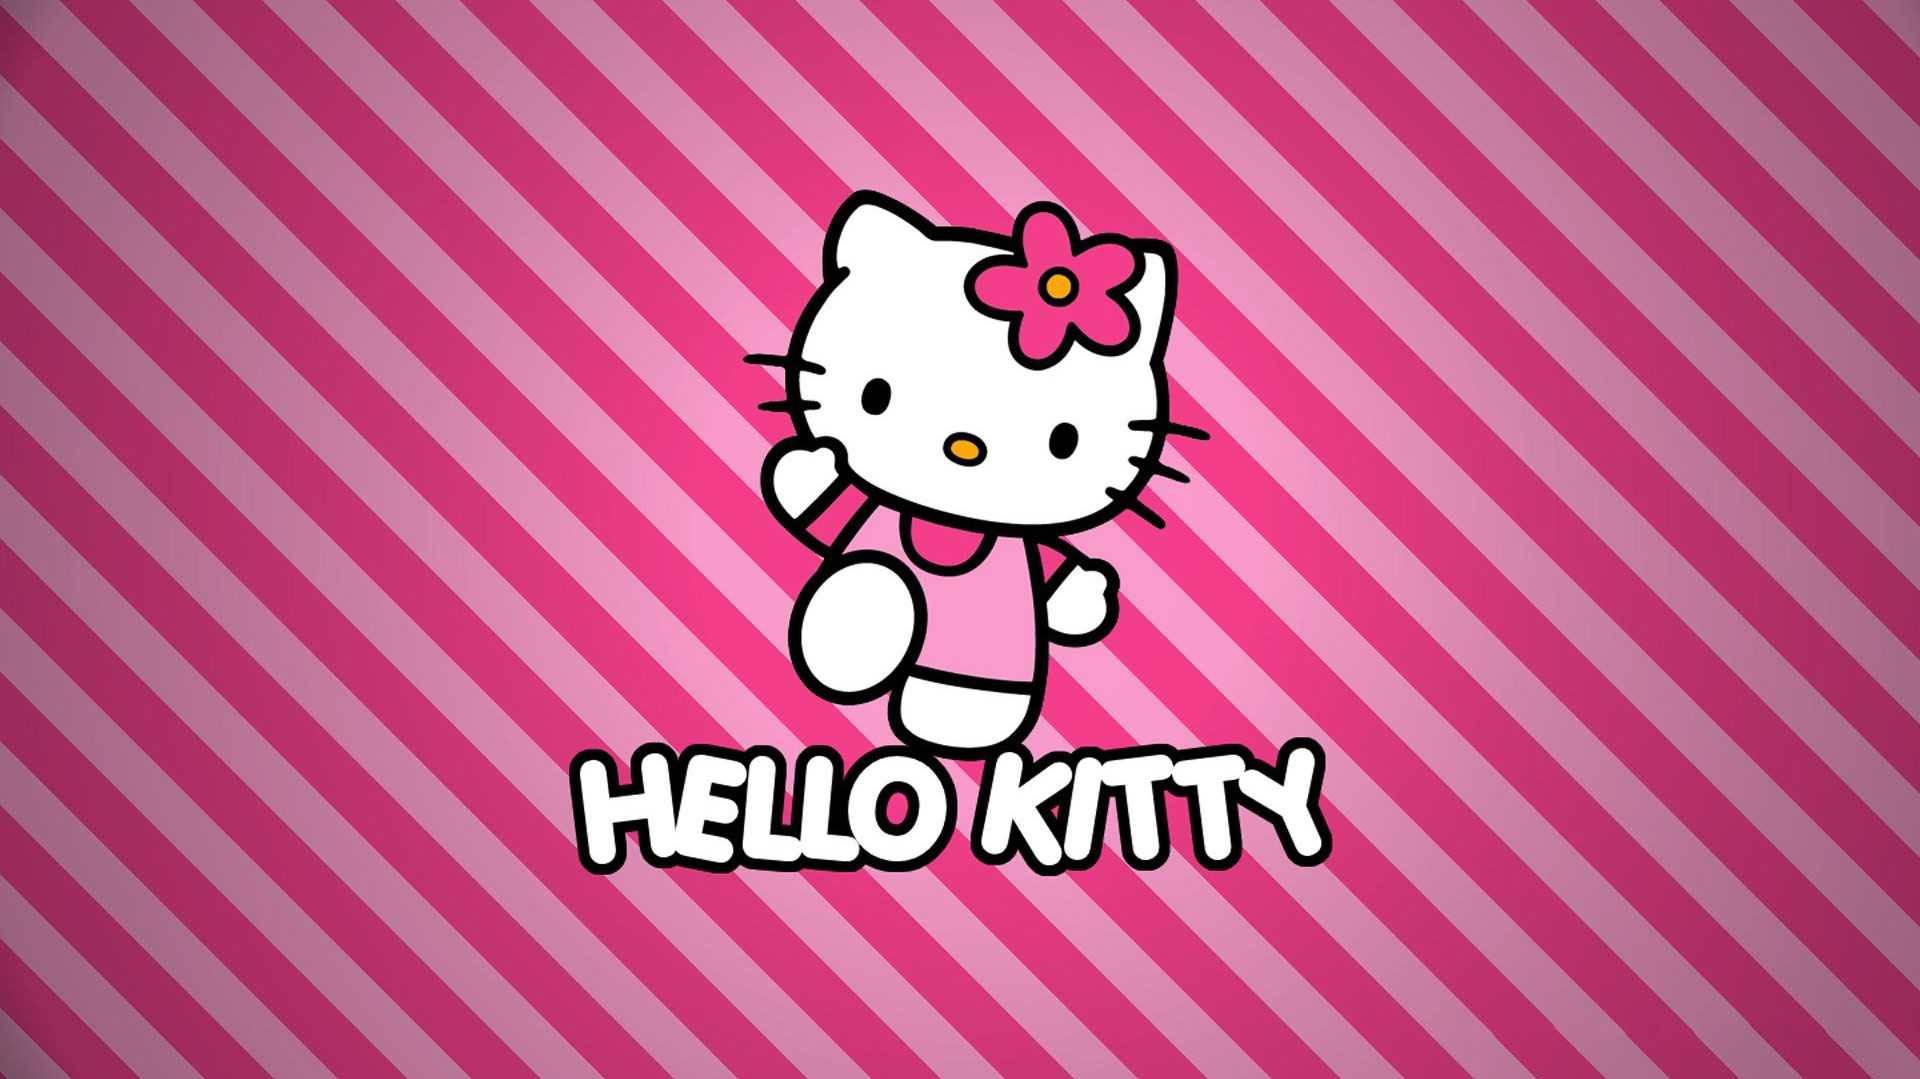 Download Sanrio Desktop Hello Kitty Pink Striped Background